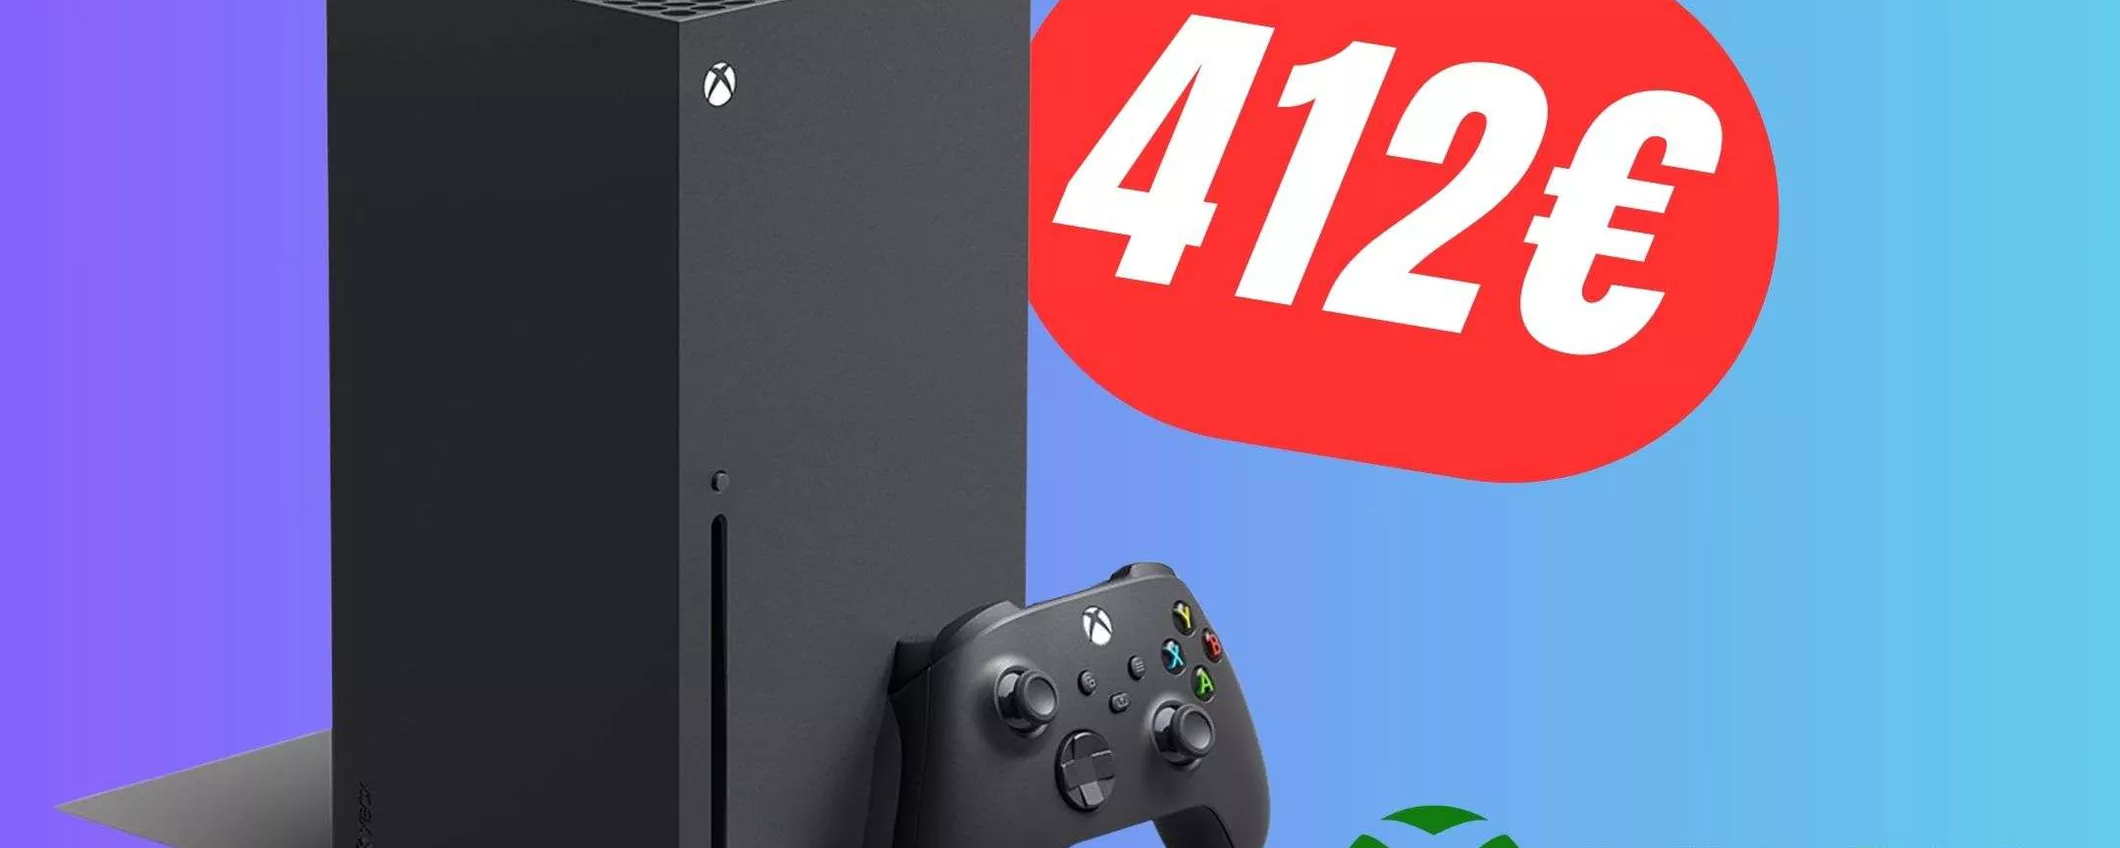 Xbox Series X è in sconto 412,99€ invece di 549,99€!